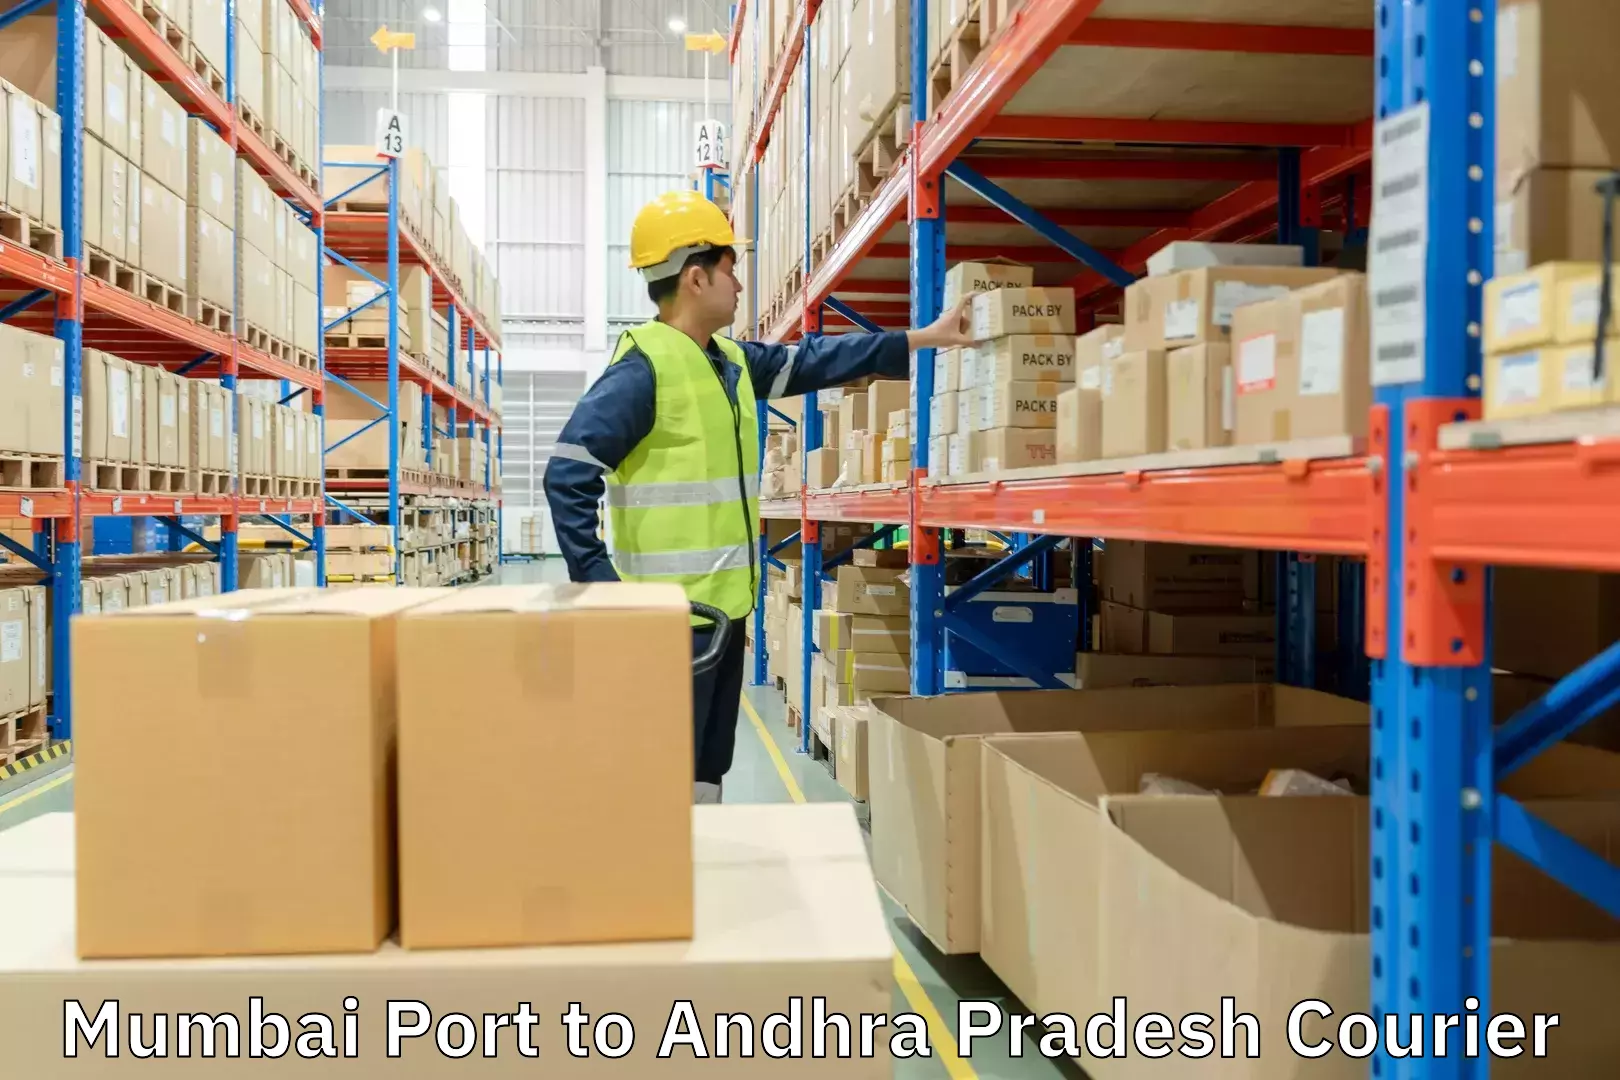 Multi-modal transport Mumbai Port to Andhra Pradesh